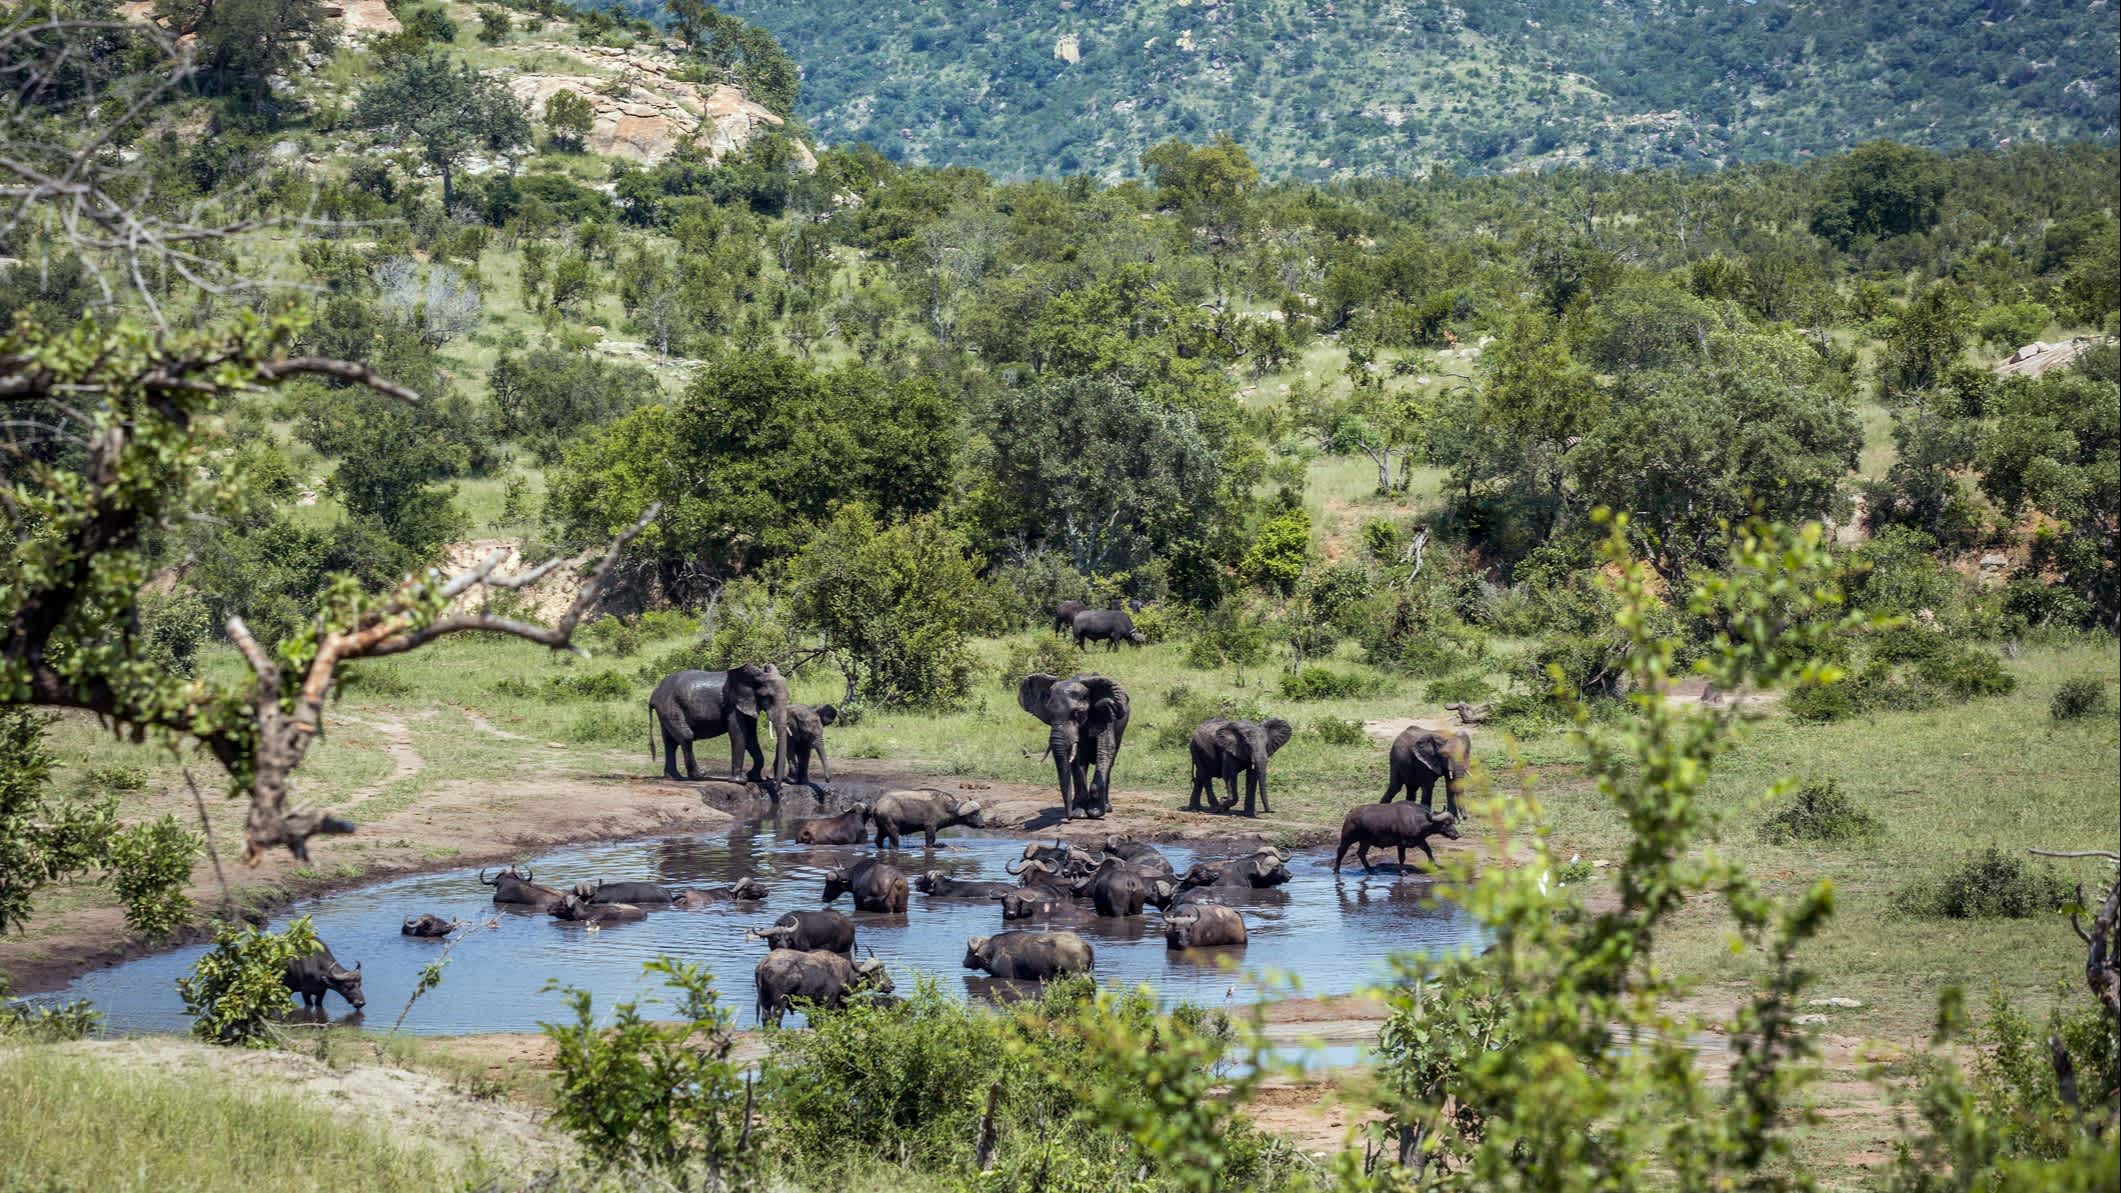 Afrikanischer Buschelefant im Krüger-Nationalpark, Südafrika

